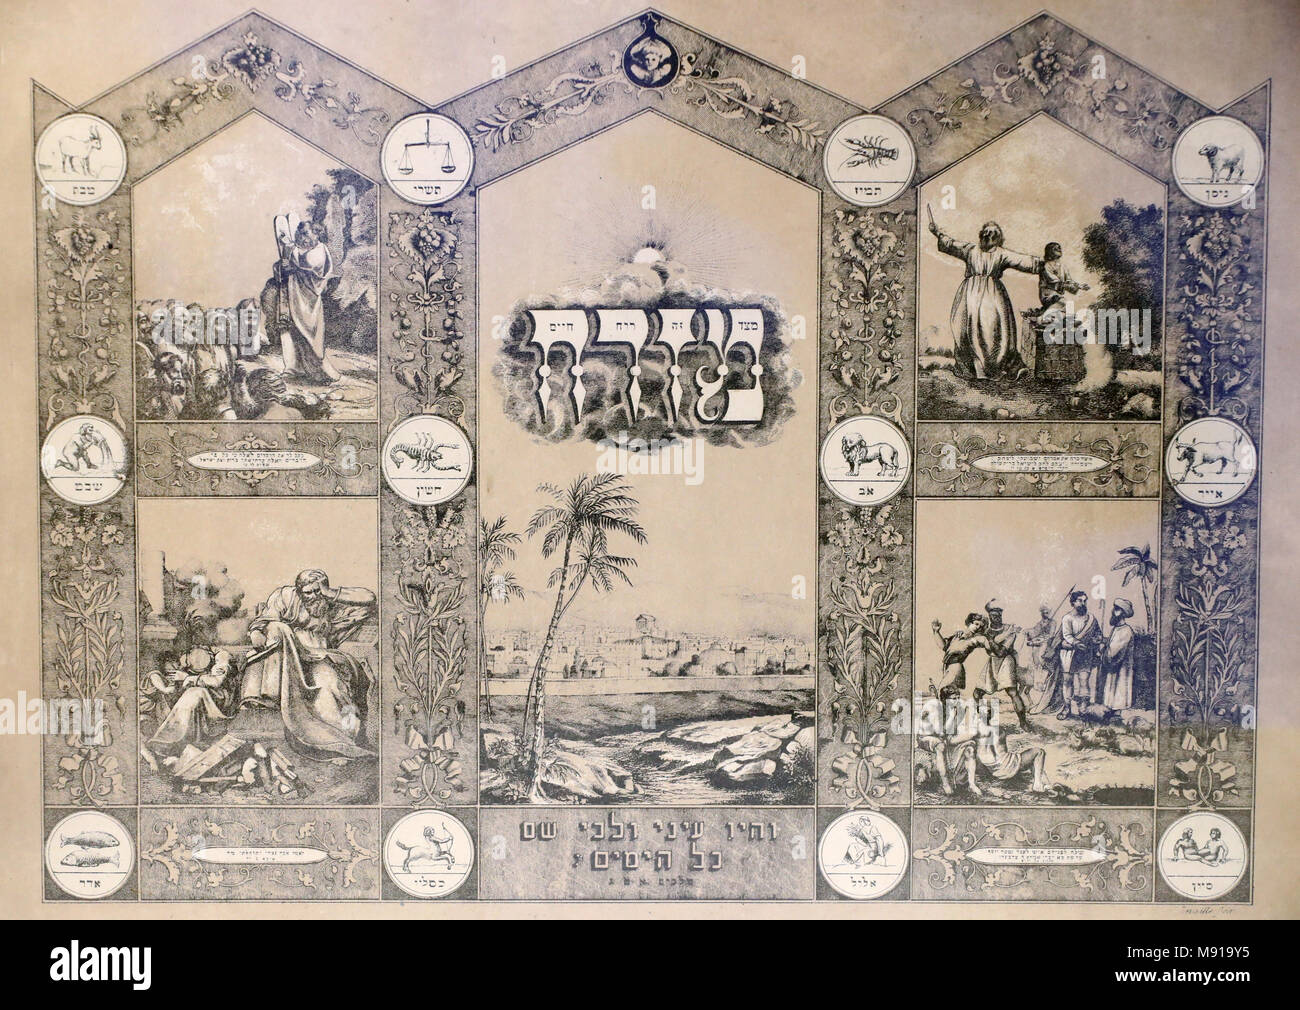 Bartholdi Museum. Eine Mizrach ist eine ornamentale Wand Plakette wird verwendet, um die Richtung des Gebetes in jüdische Wohnungen anzugeben. Colmar. Frankreich. Stockfoto